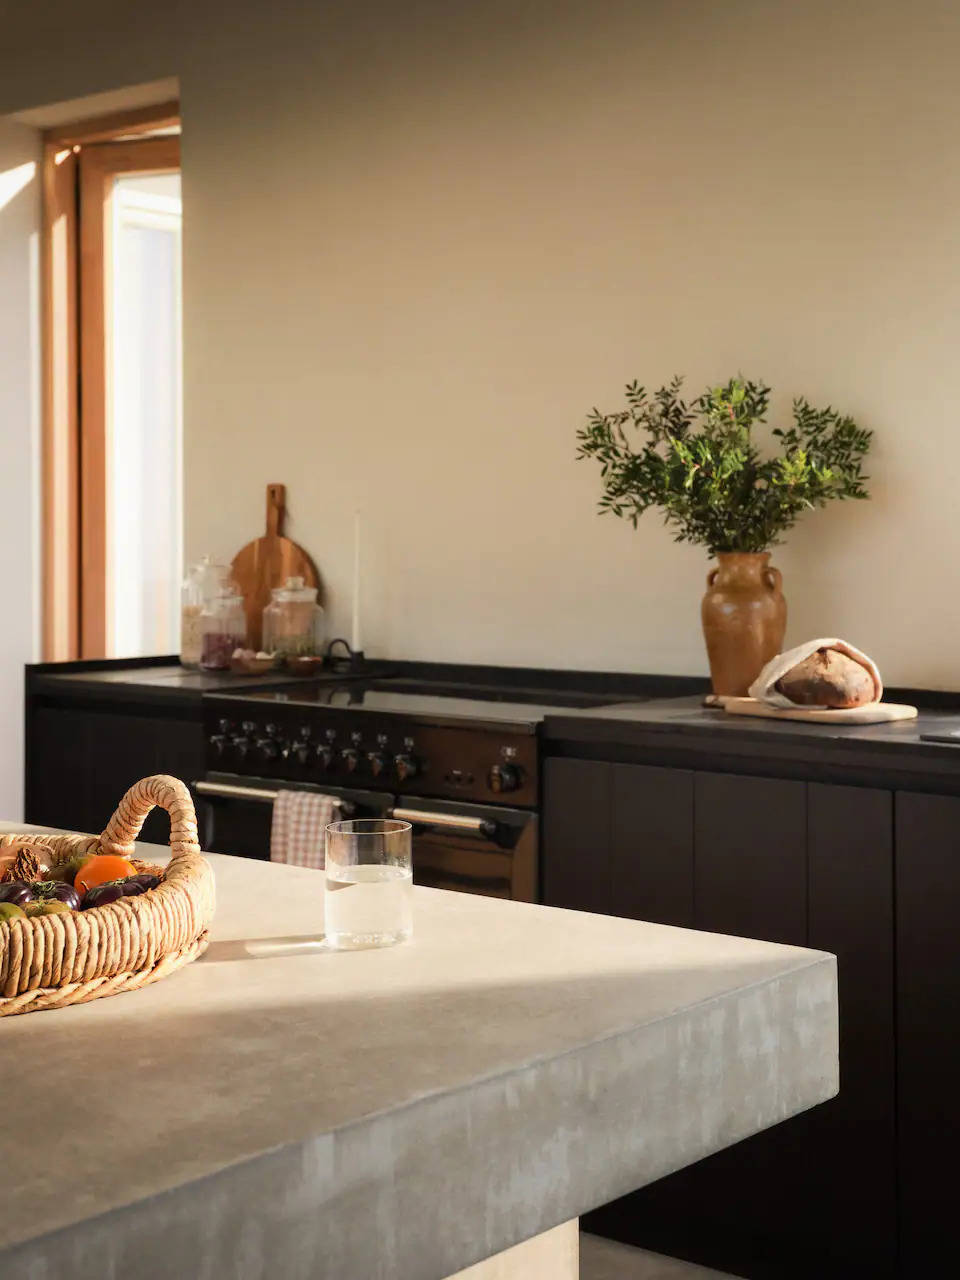 Cocina con mobiliario oscuro e isla con encimera de cemento pulido, de Zara Home. 